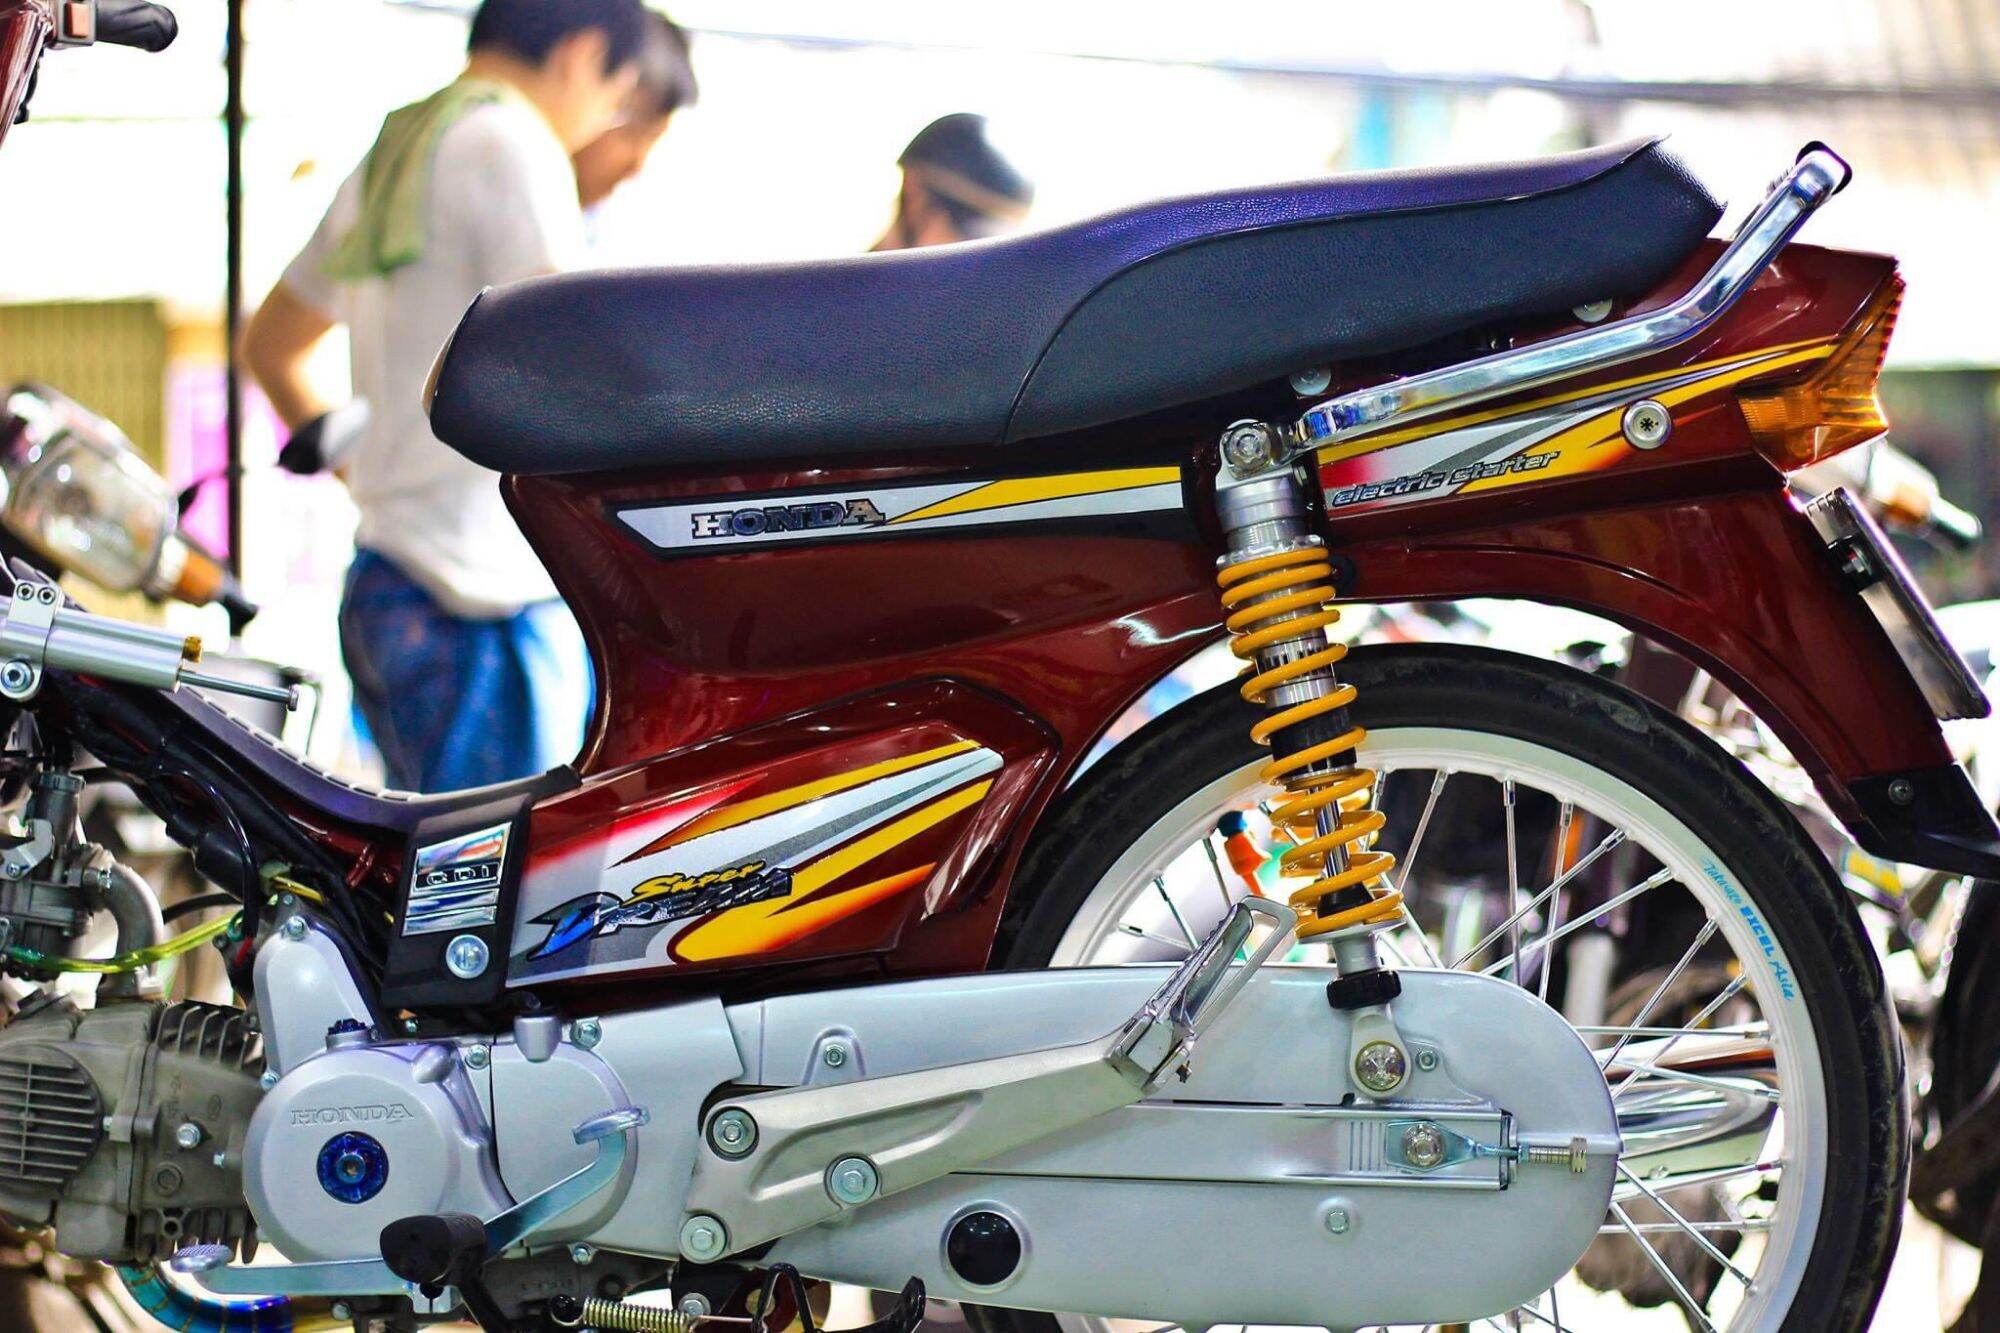 Honda Super Dream độ kiểng kẻ cắp giấc mơ của bao thế hệ người Việt   Xefun